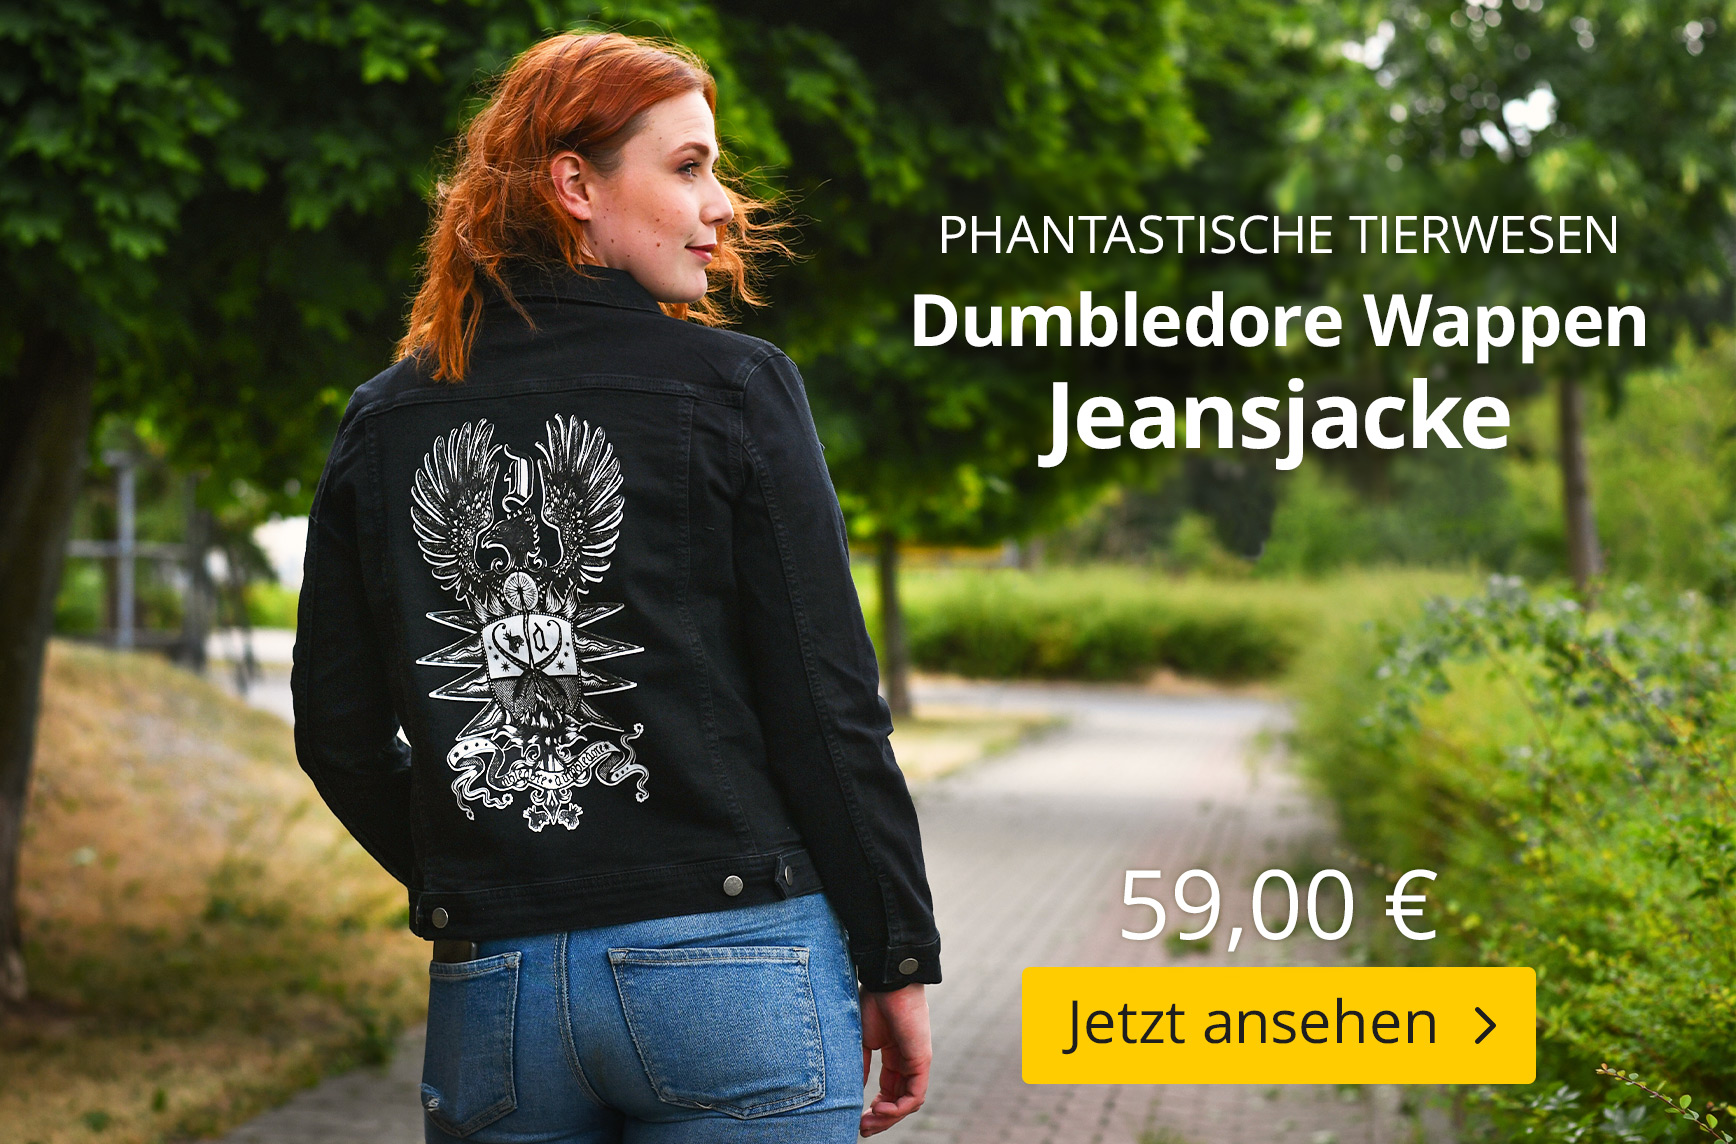 Dumbledore Wappen Jeansjacke schwarz - Phantastische Tierwesen - 59 EUR